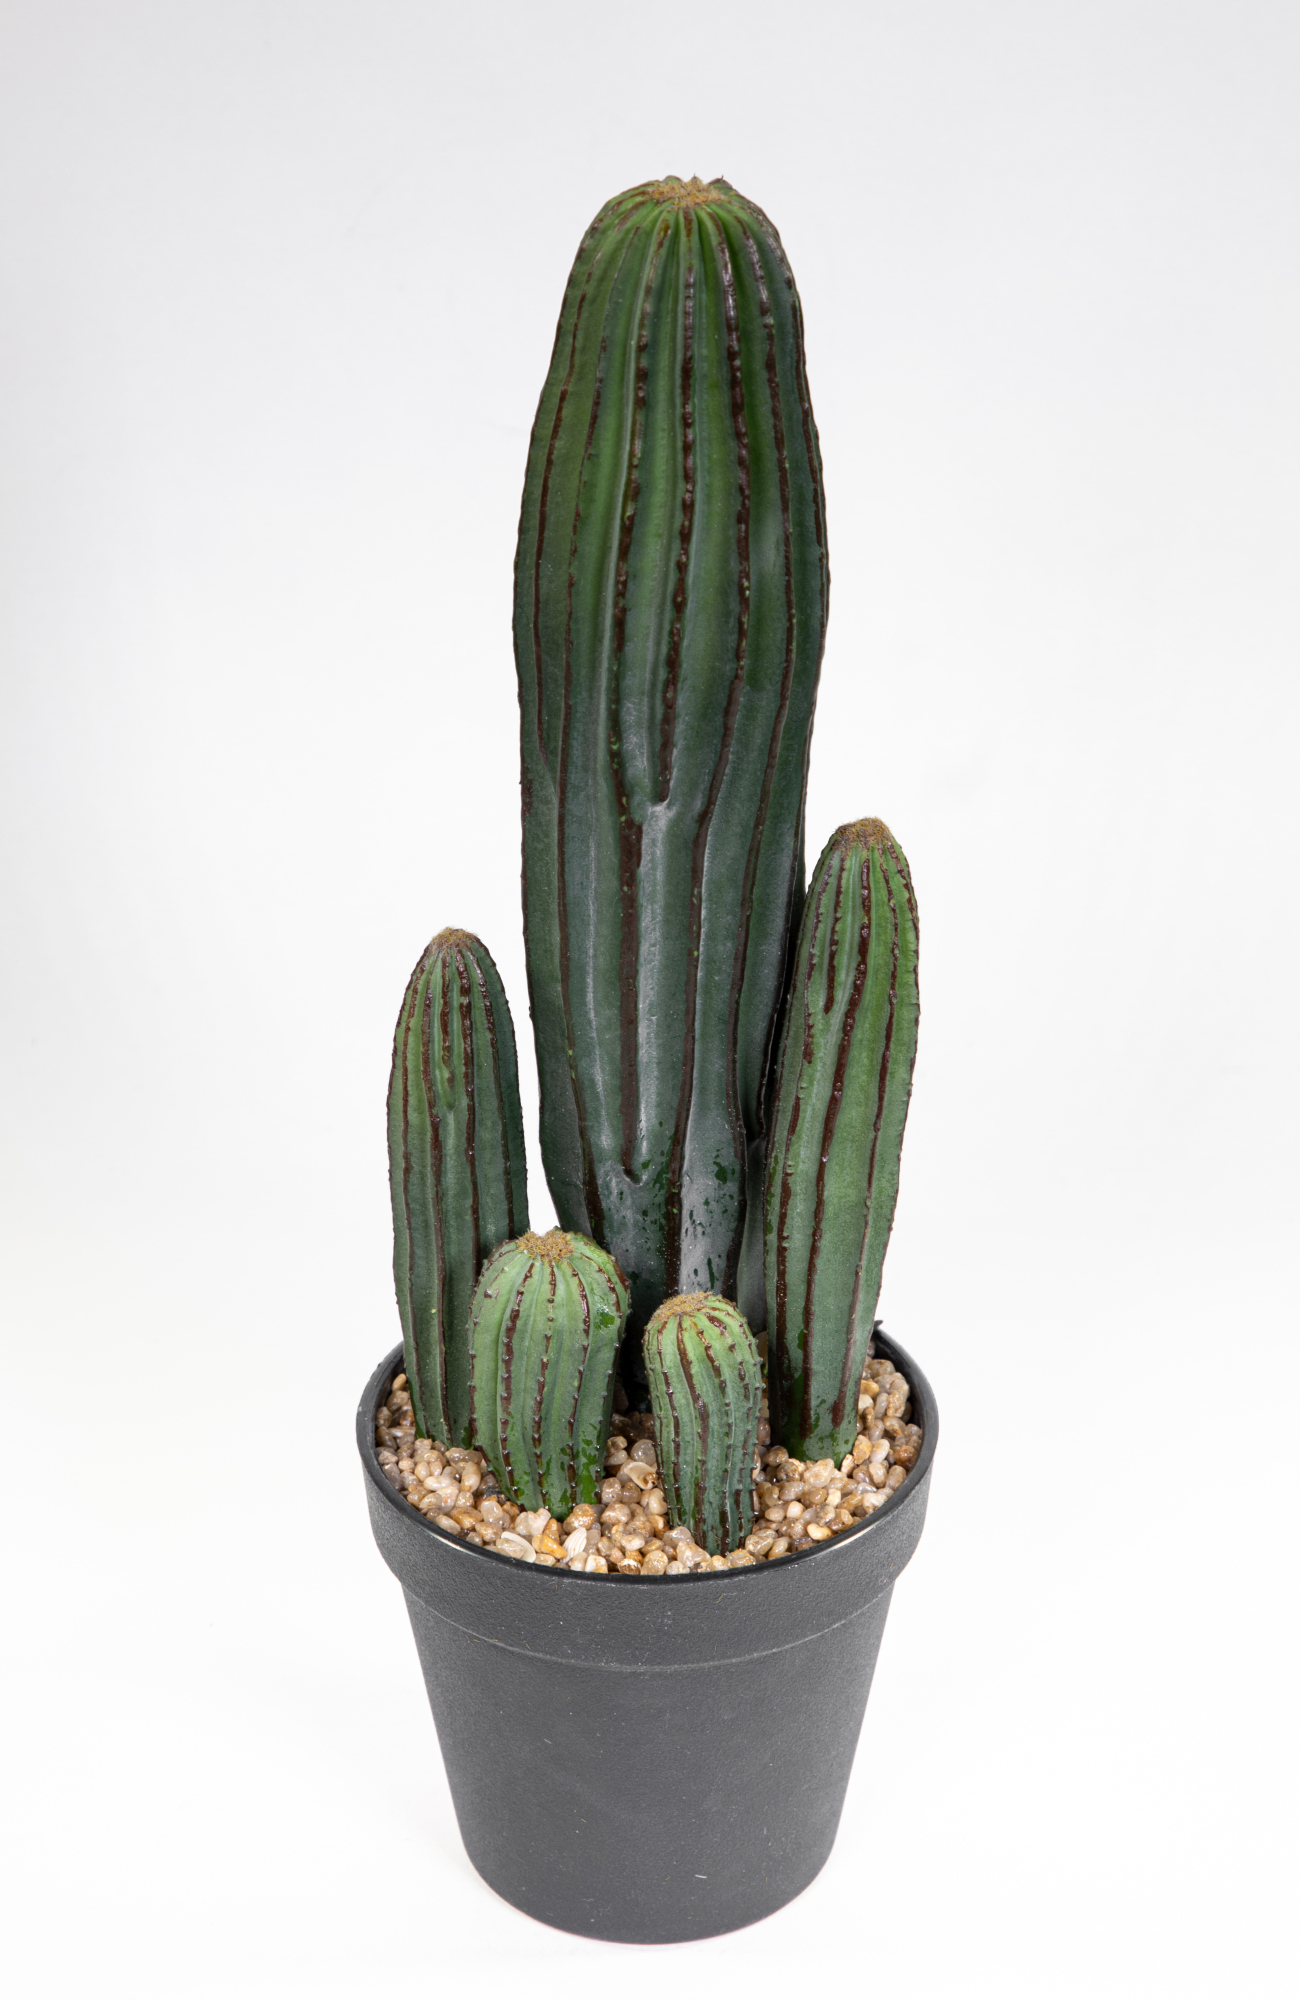 Säulenkaktus 36cm im Topf JA Kunstpflanzen künstliche Kakteen Pflanzen künstlicher Kaktus